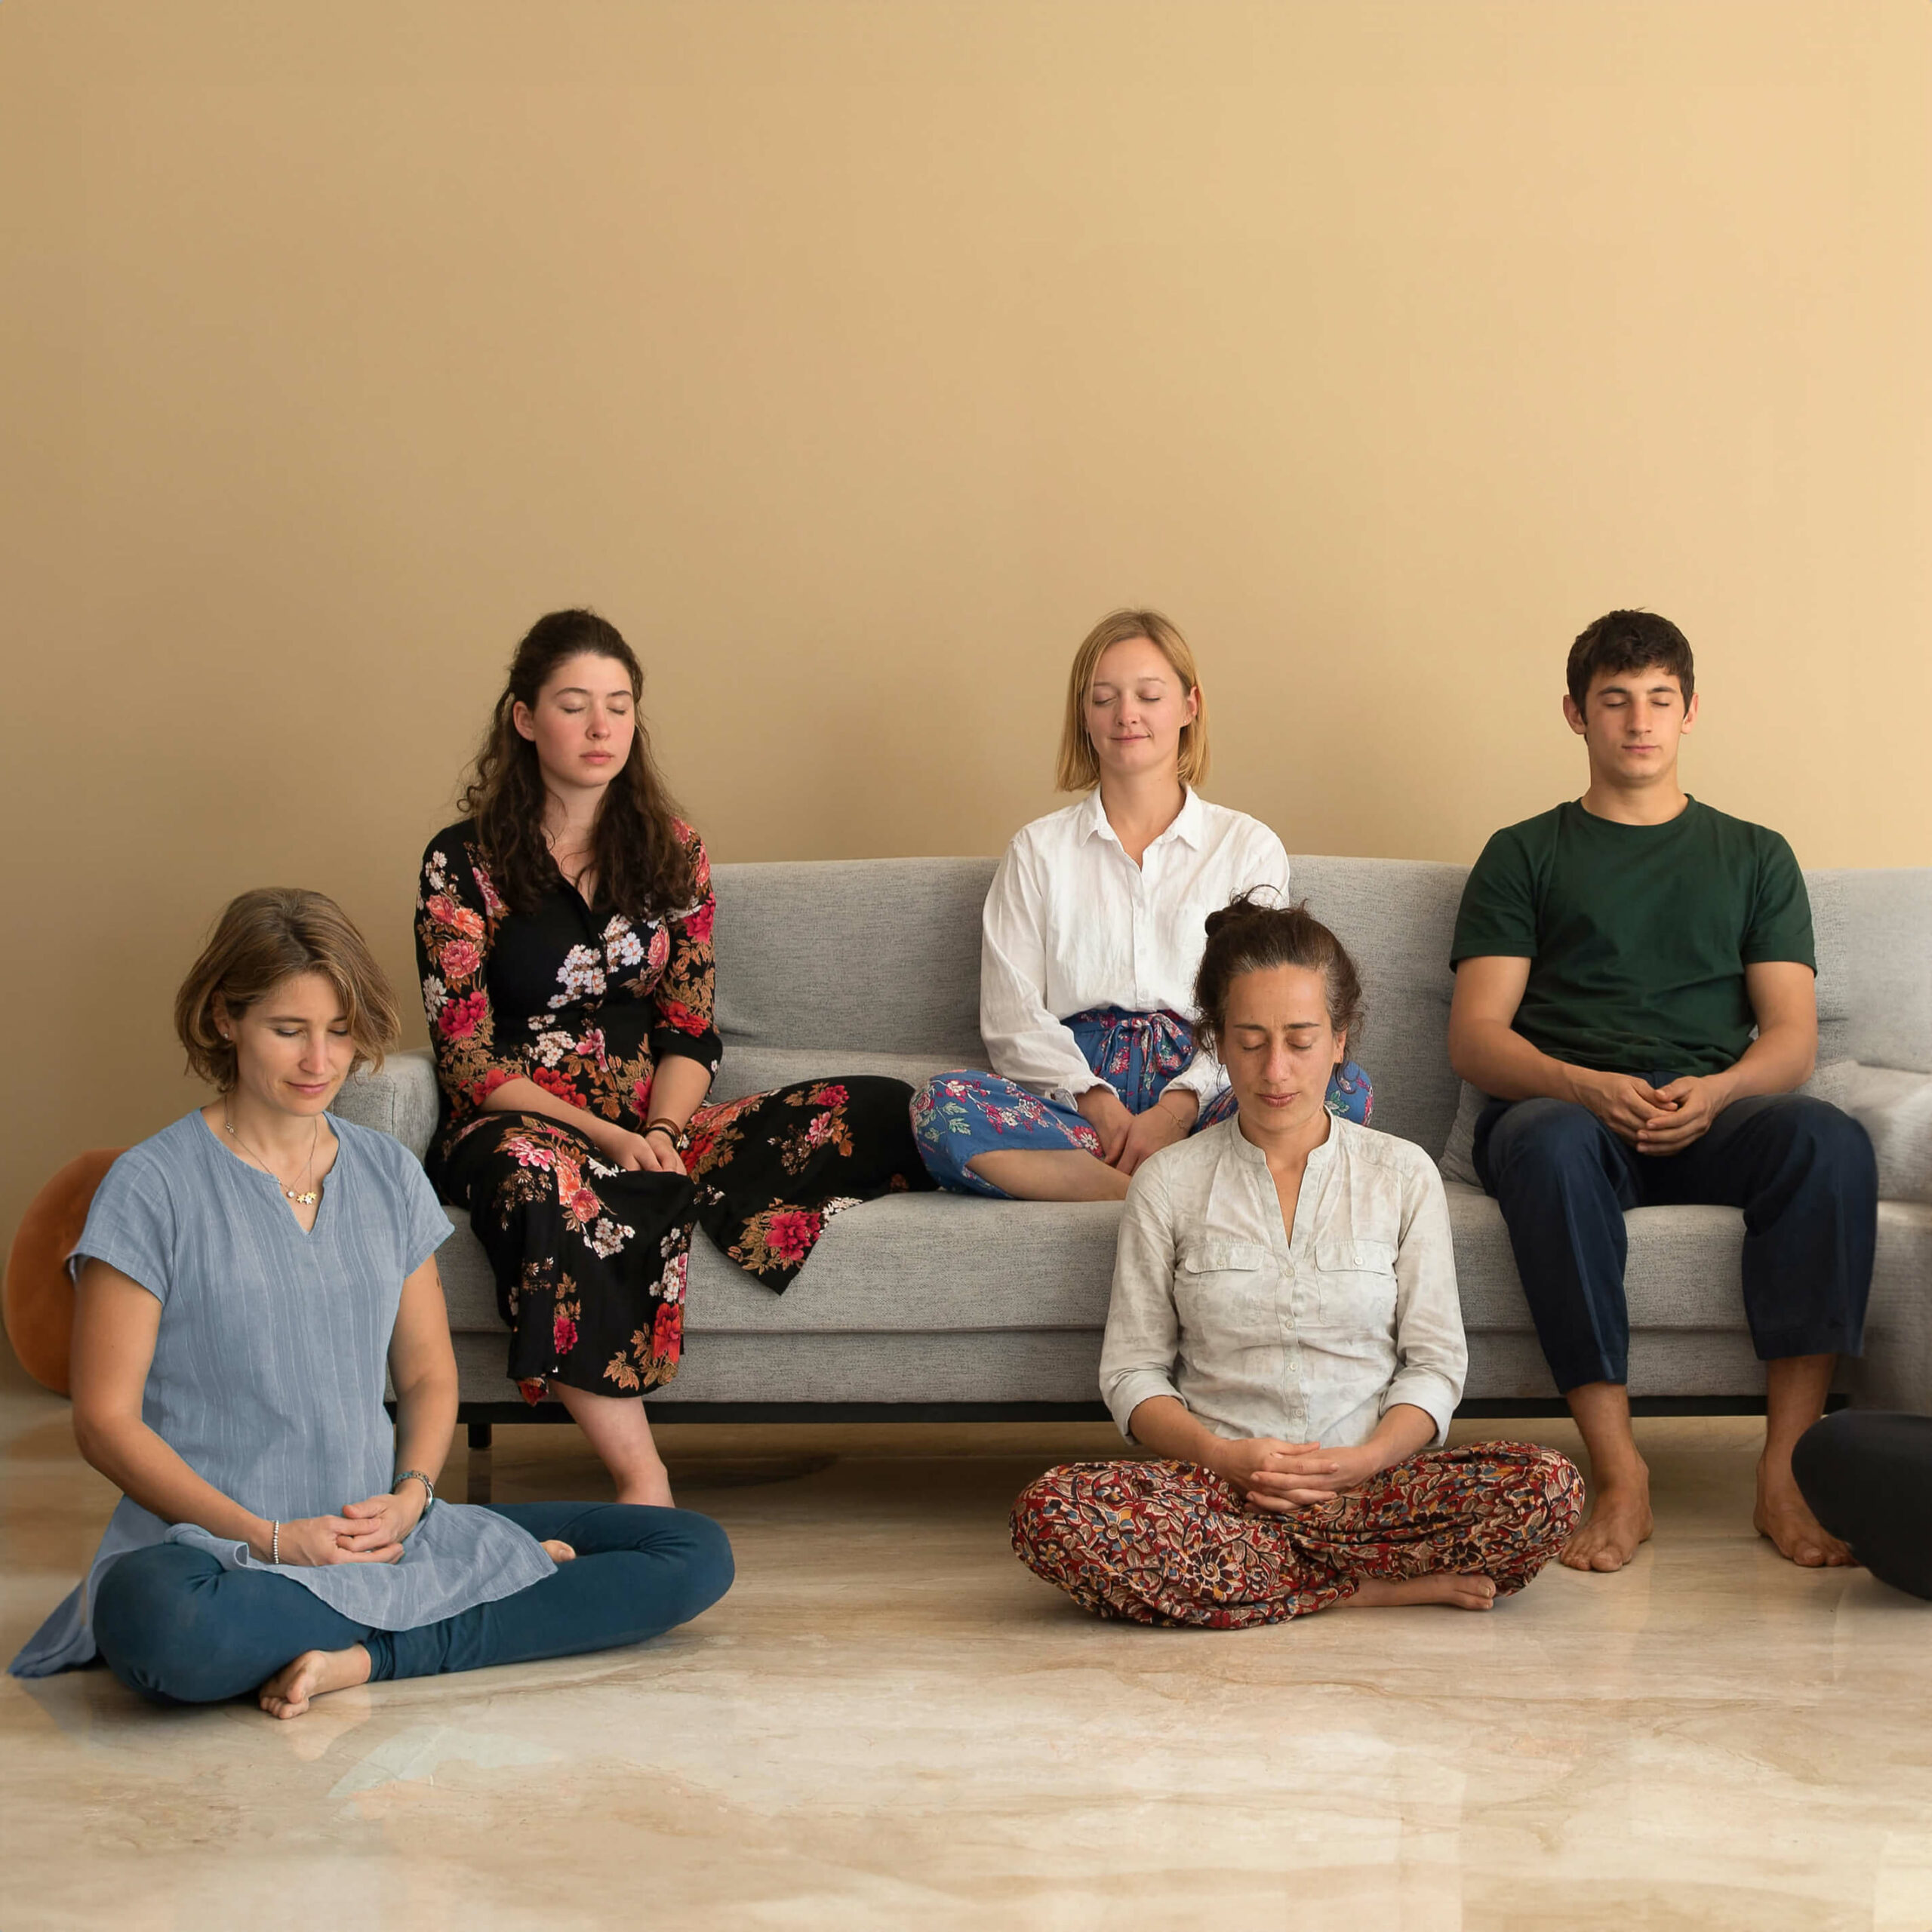 Fünf junge Menschen meditieren zusammen auf dem Sofa.